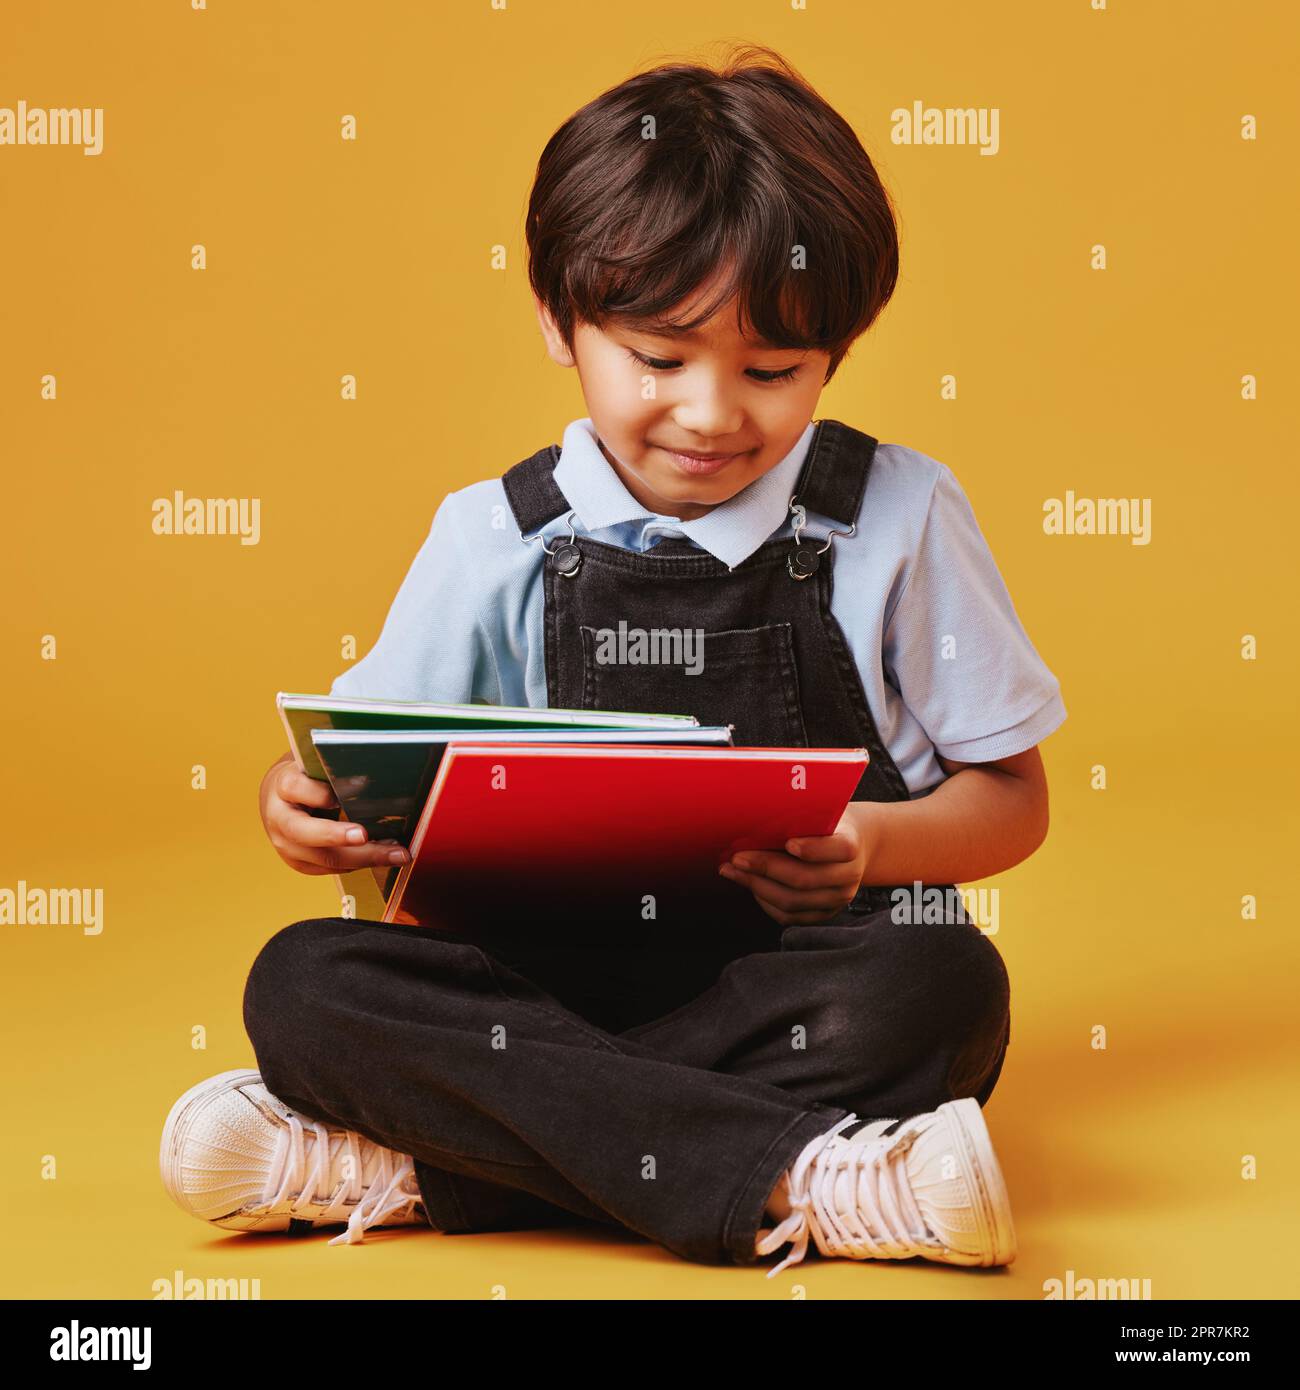 Ein süßer kleiner asiatischer Junge, der auf dem Boden sitzt und lässige Kleidung trägt, während er vor einem orangefarbenen Hintergrund liest. Glücklich und zufrieden, während der Schwerpunkt auf Bildung liegt. Das Kind ist bereit für die Schule Stockfoto